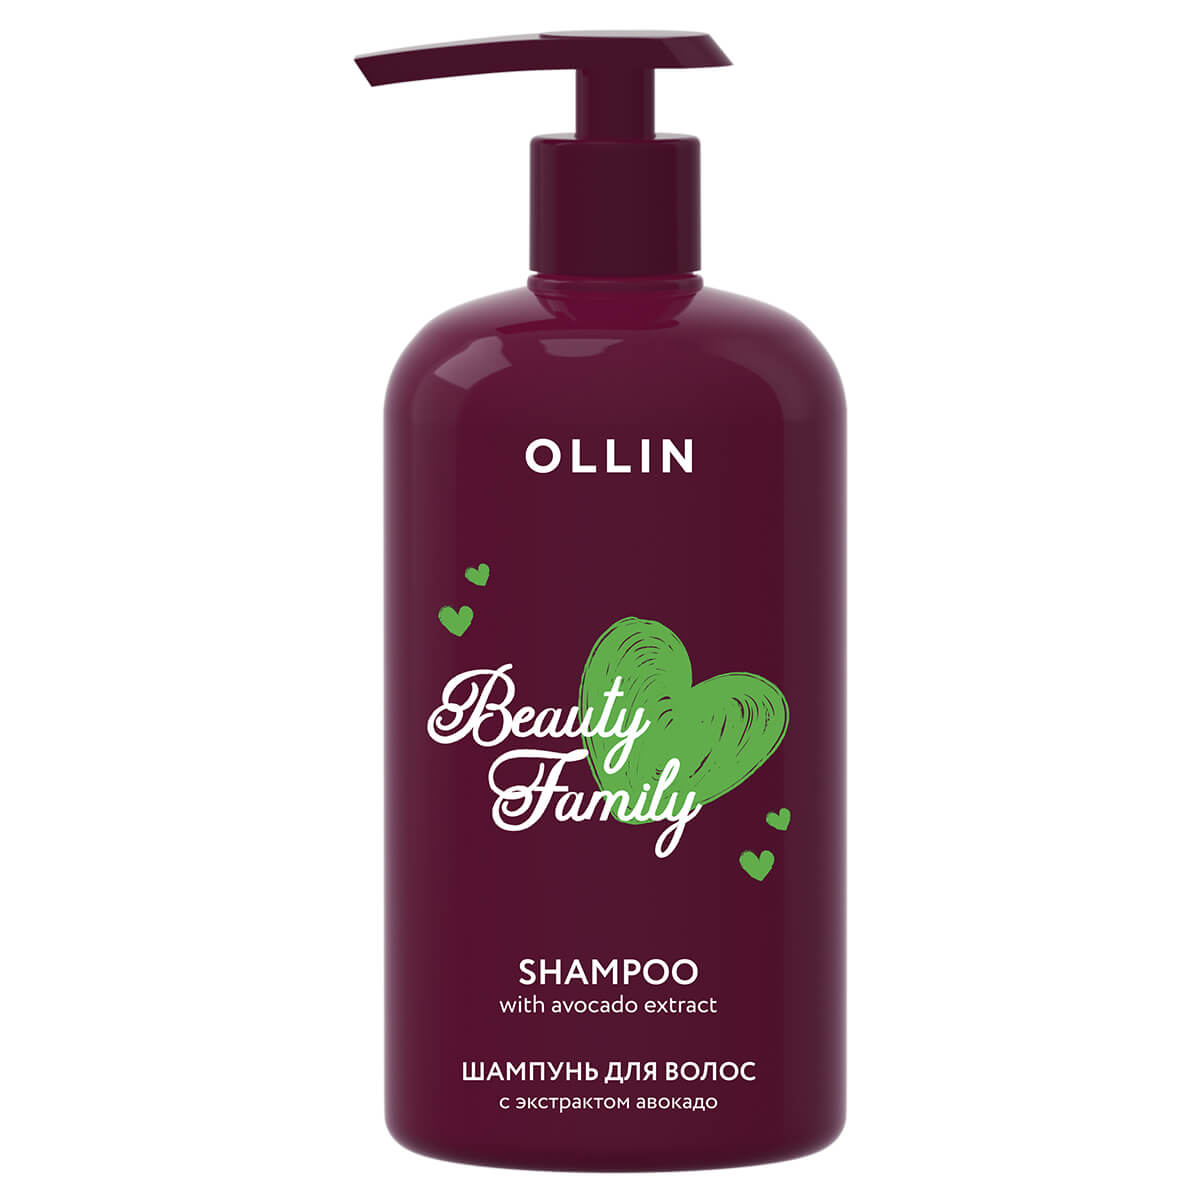 Купить Beauty Family Шампунь для волос с экстрактом авокадо, 500 мл, OLLIN, OLLIN Professional